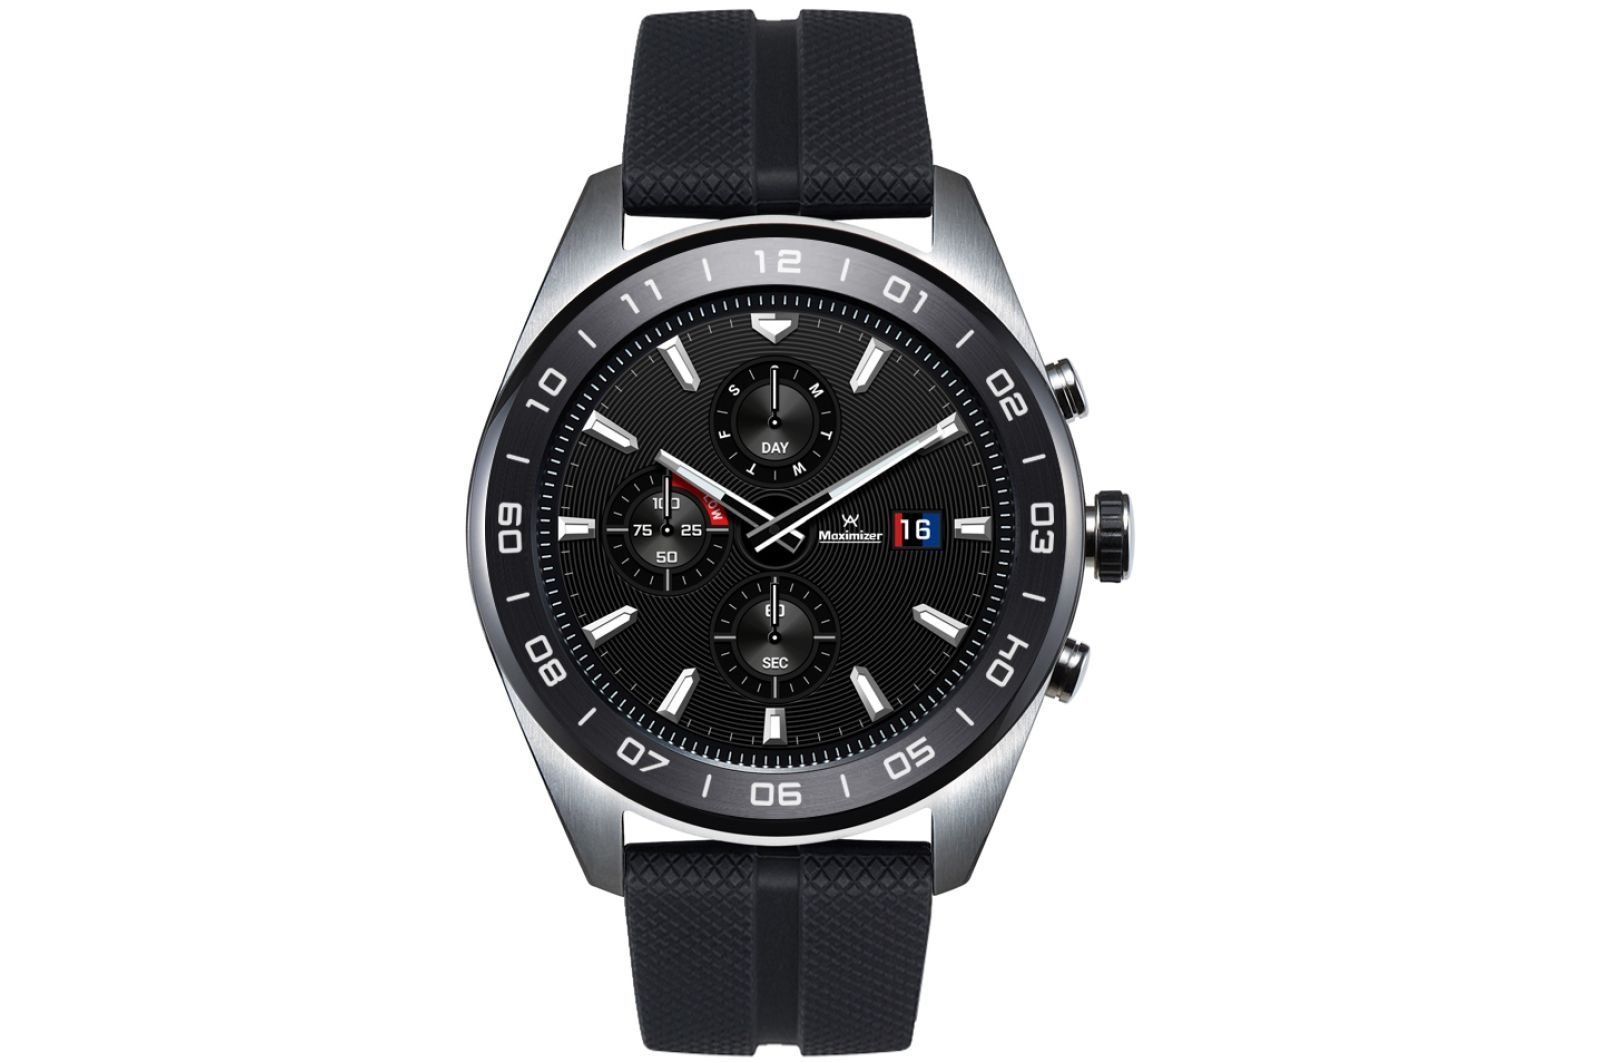 Pametni sat LG Watch W7 - prednosti i nedostaci